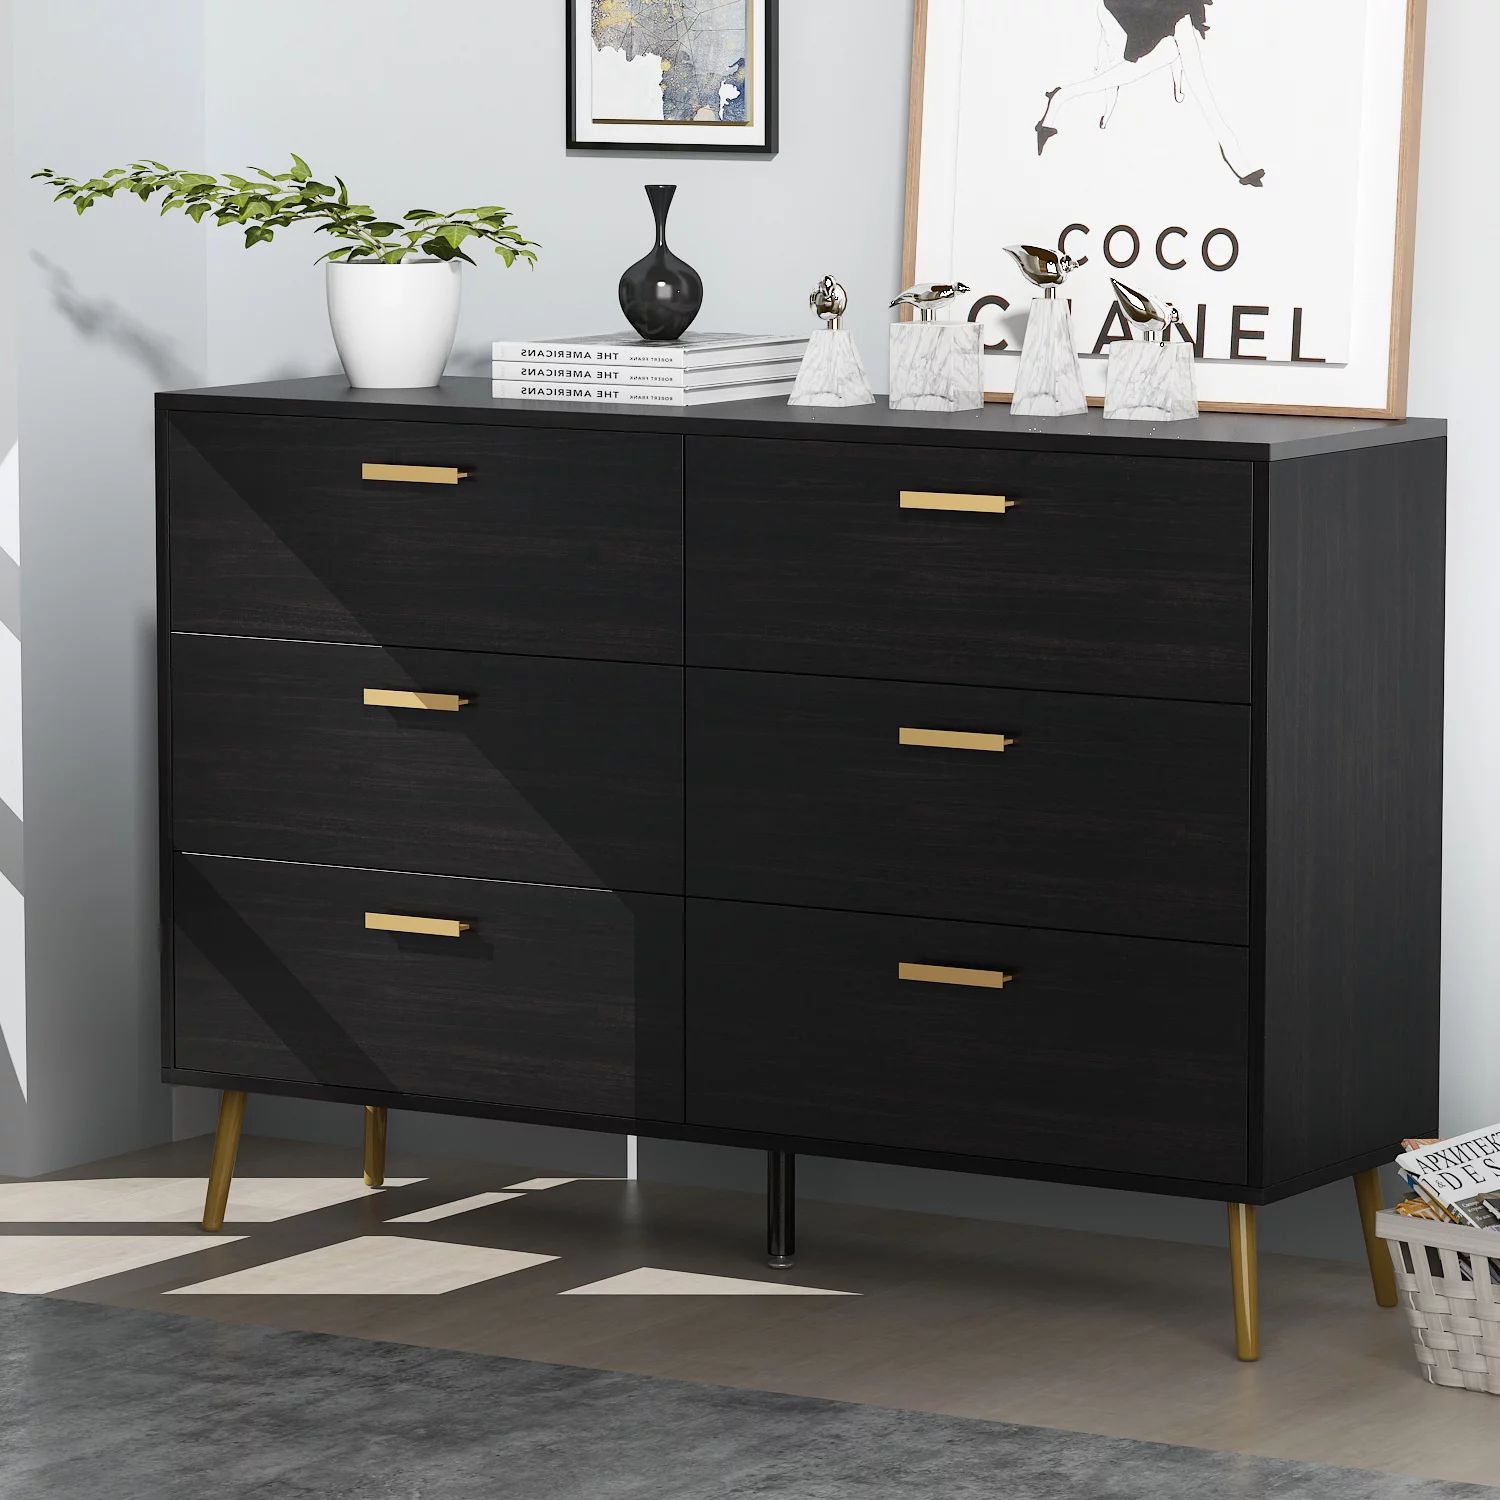 Erkang 6 Drawer Wooden Dresser Chest for Bedroom Living Room Sideboard Cabinet Black 54" | Walmart (US)